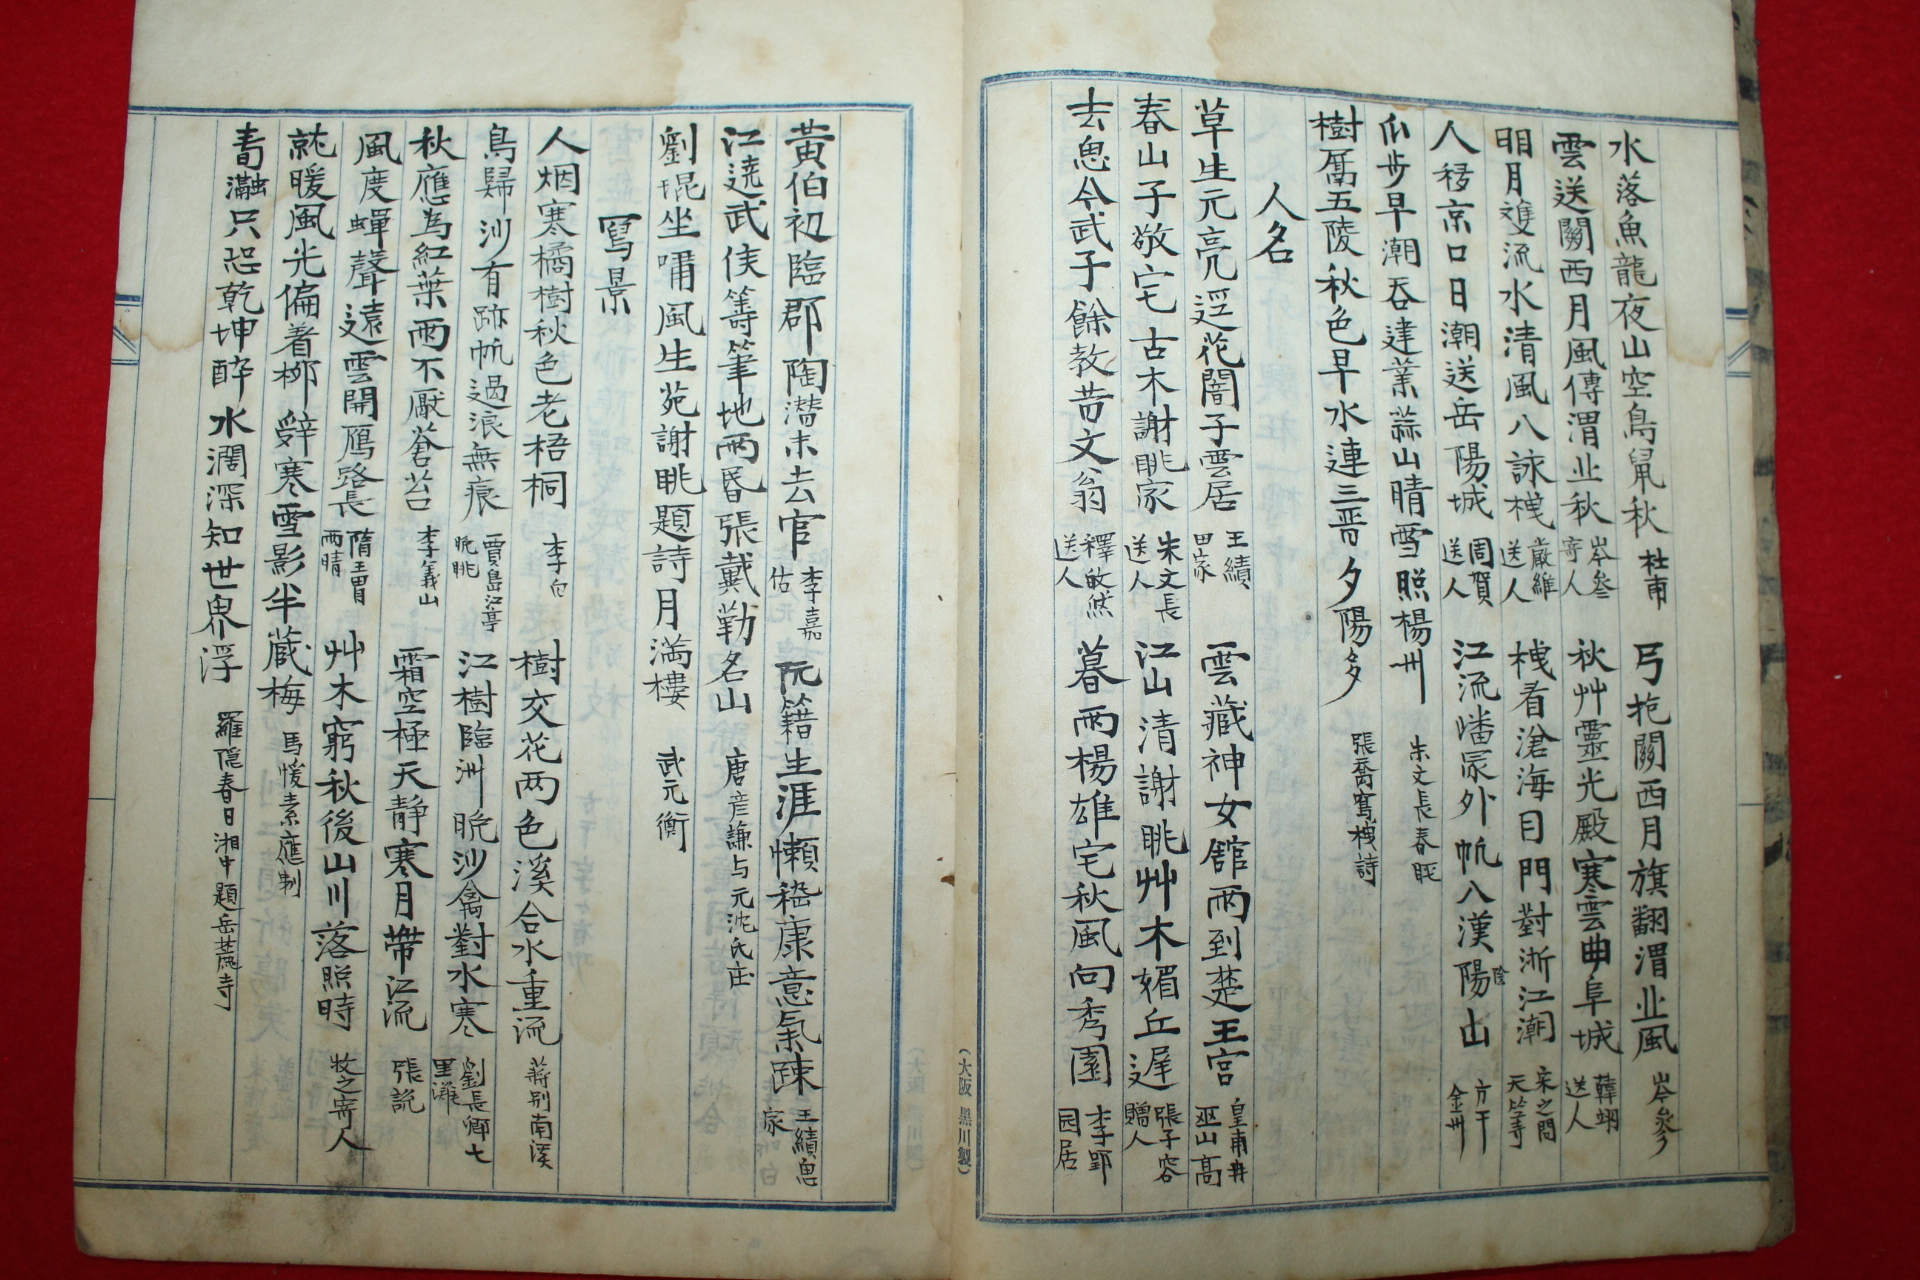 조선시대 시인의 약력과 시가 필사된 필사본 1책